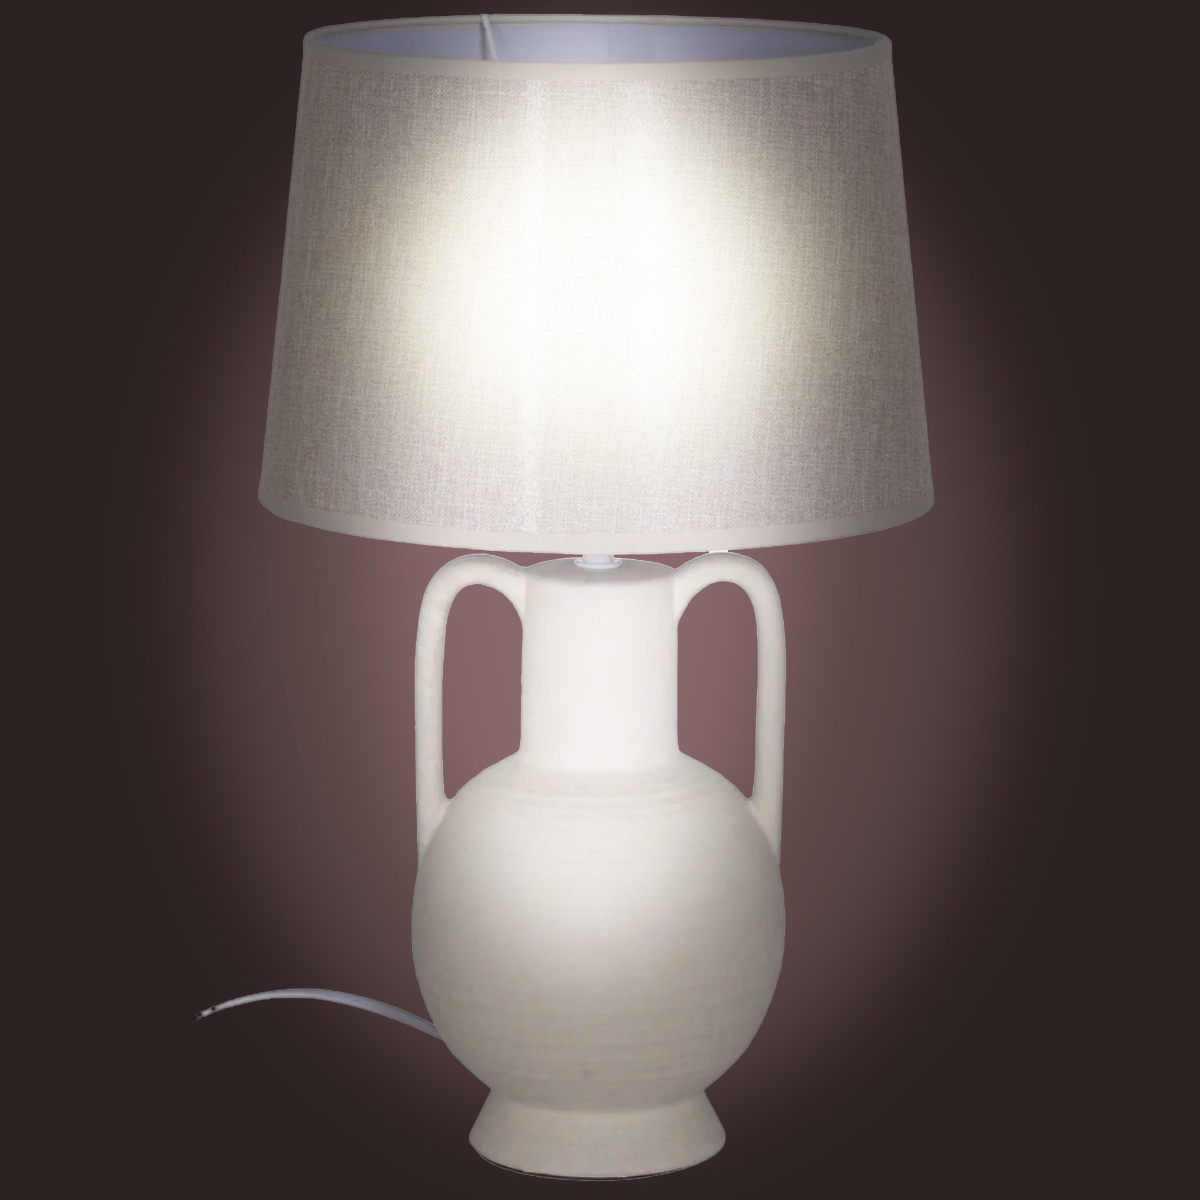 Beige ceramic lamp 47 cm